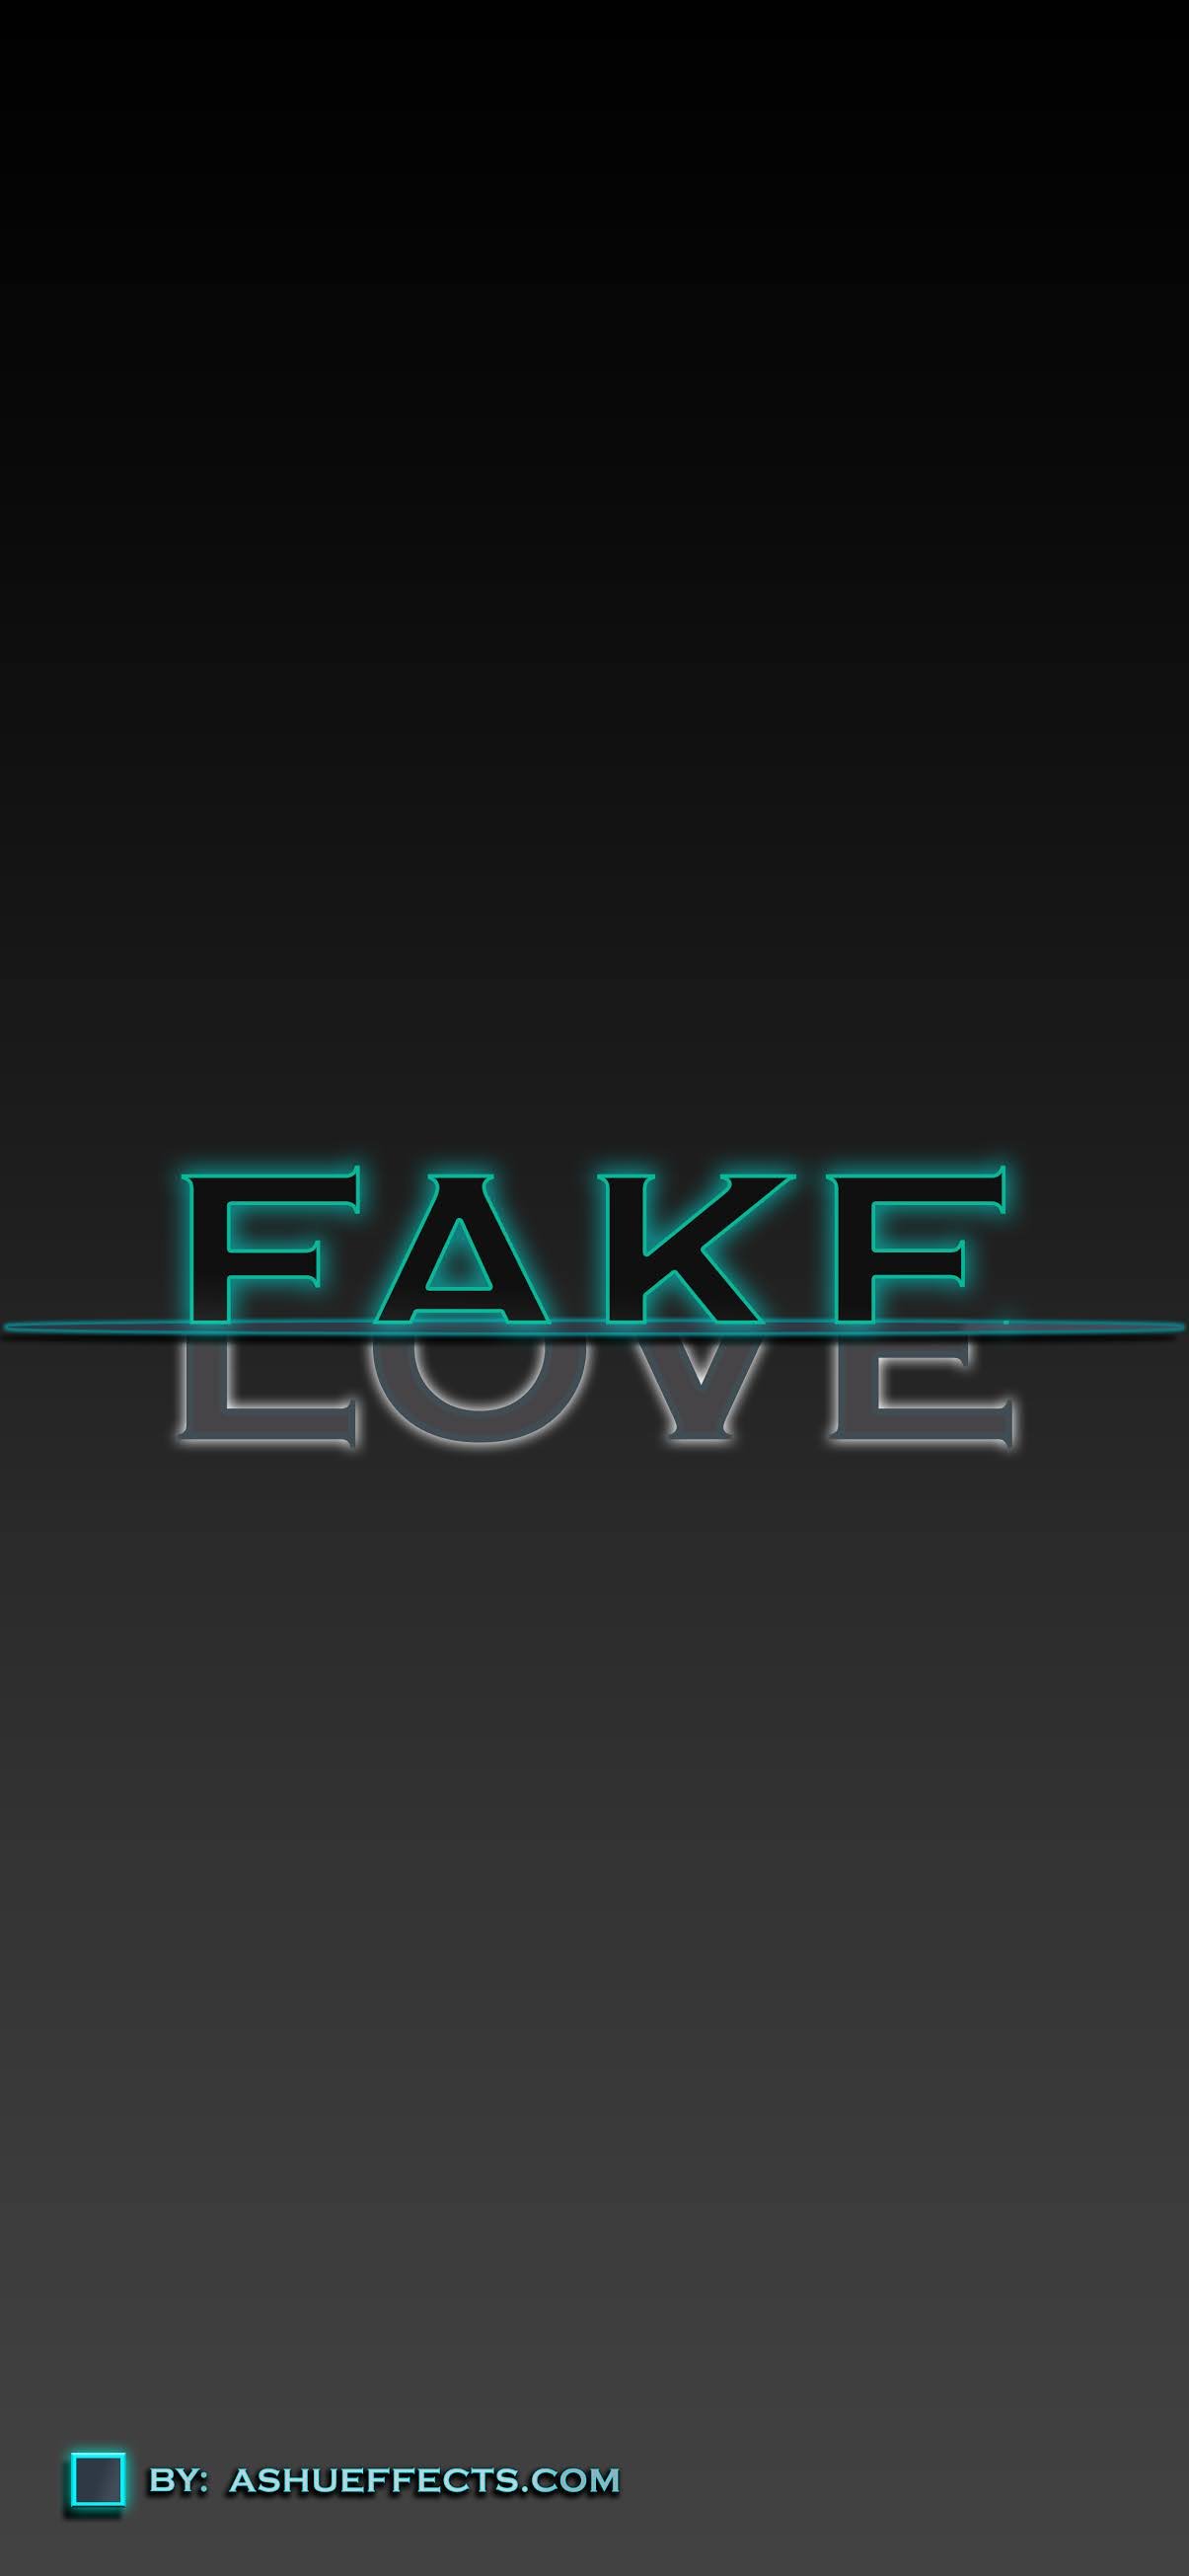 Pin by Irfanansari_7493 on png background | Fake love, Gaming logos, Logos